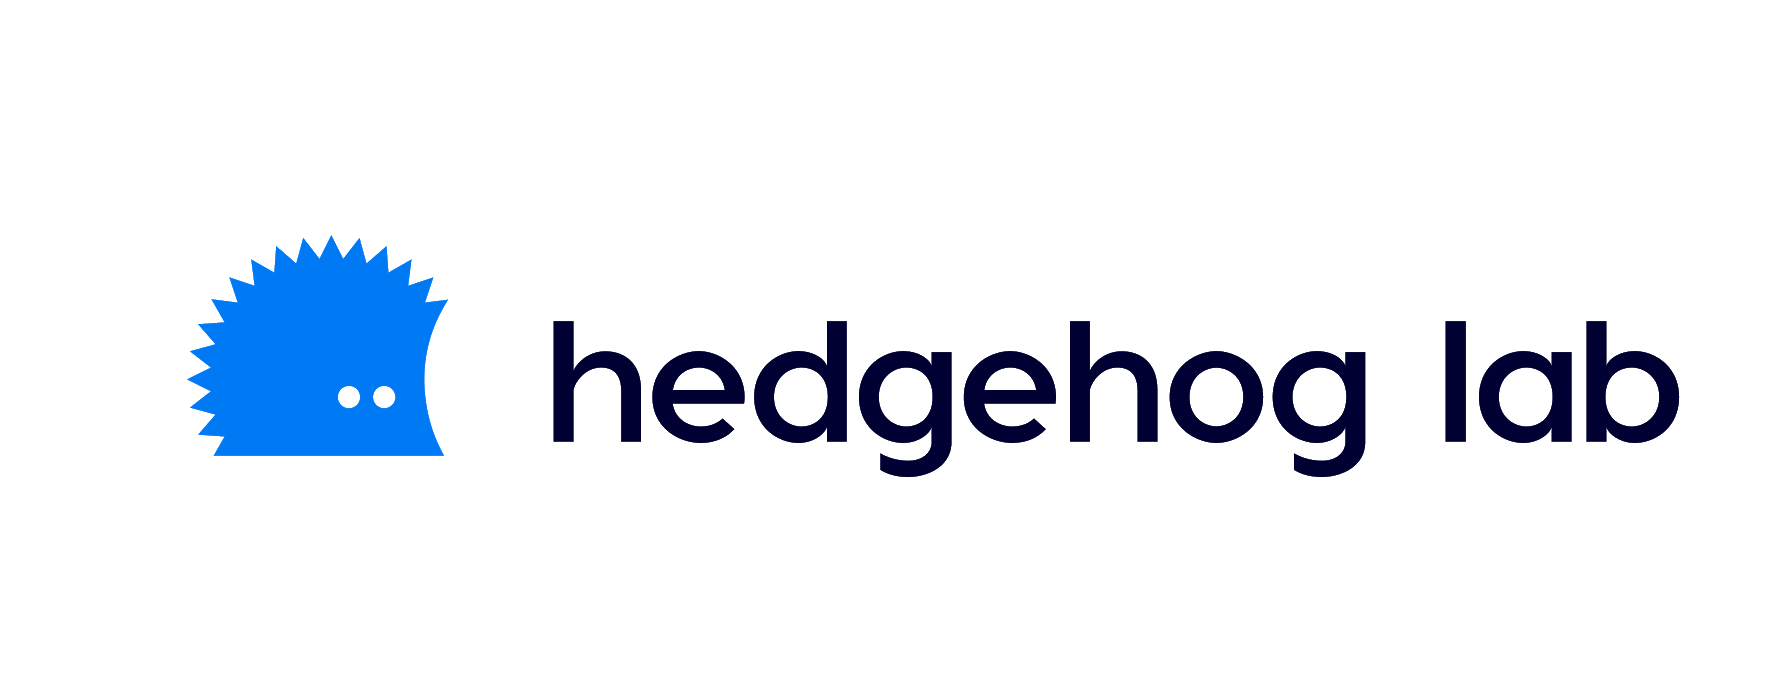 Hedgehog app design company